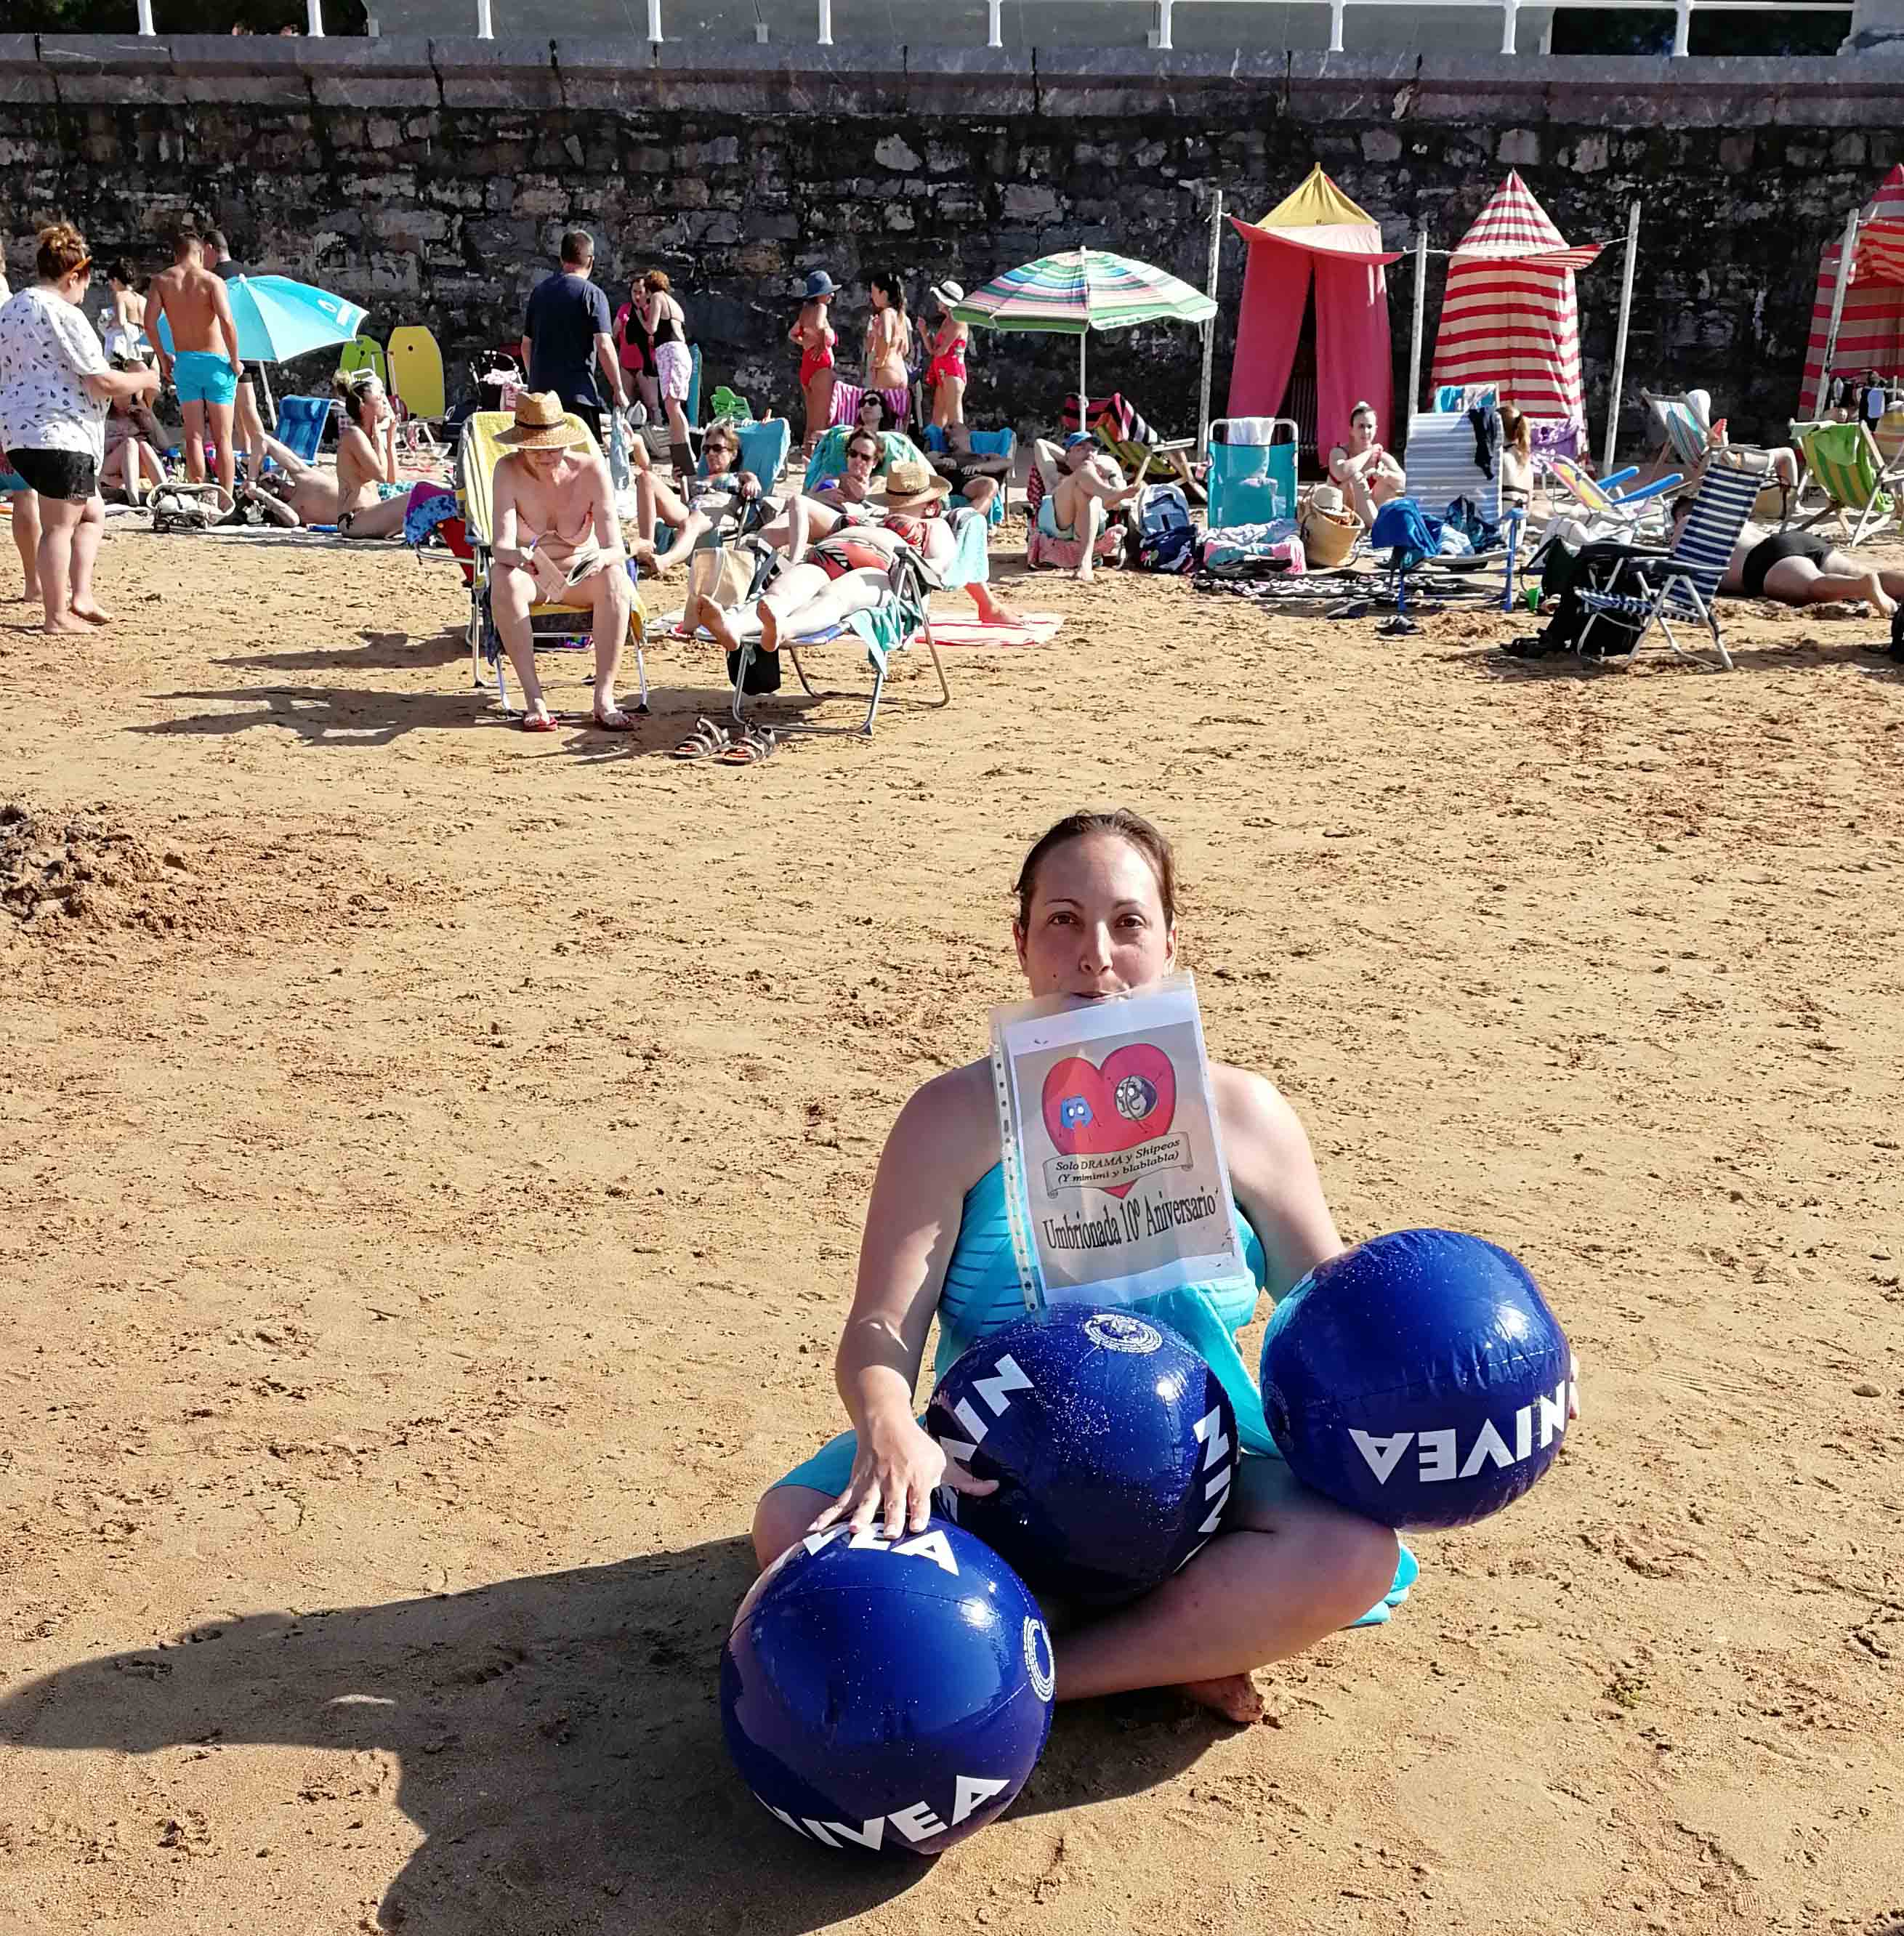 48. Con tres pelotas de playa Nivea infladas, en una playa en donde se vea gente.